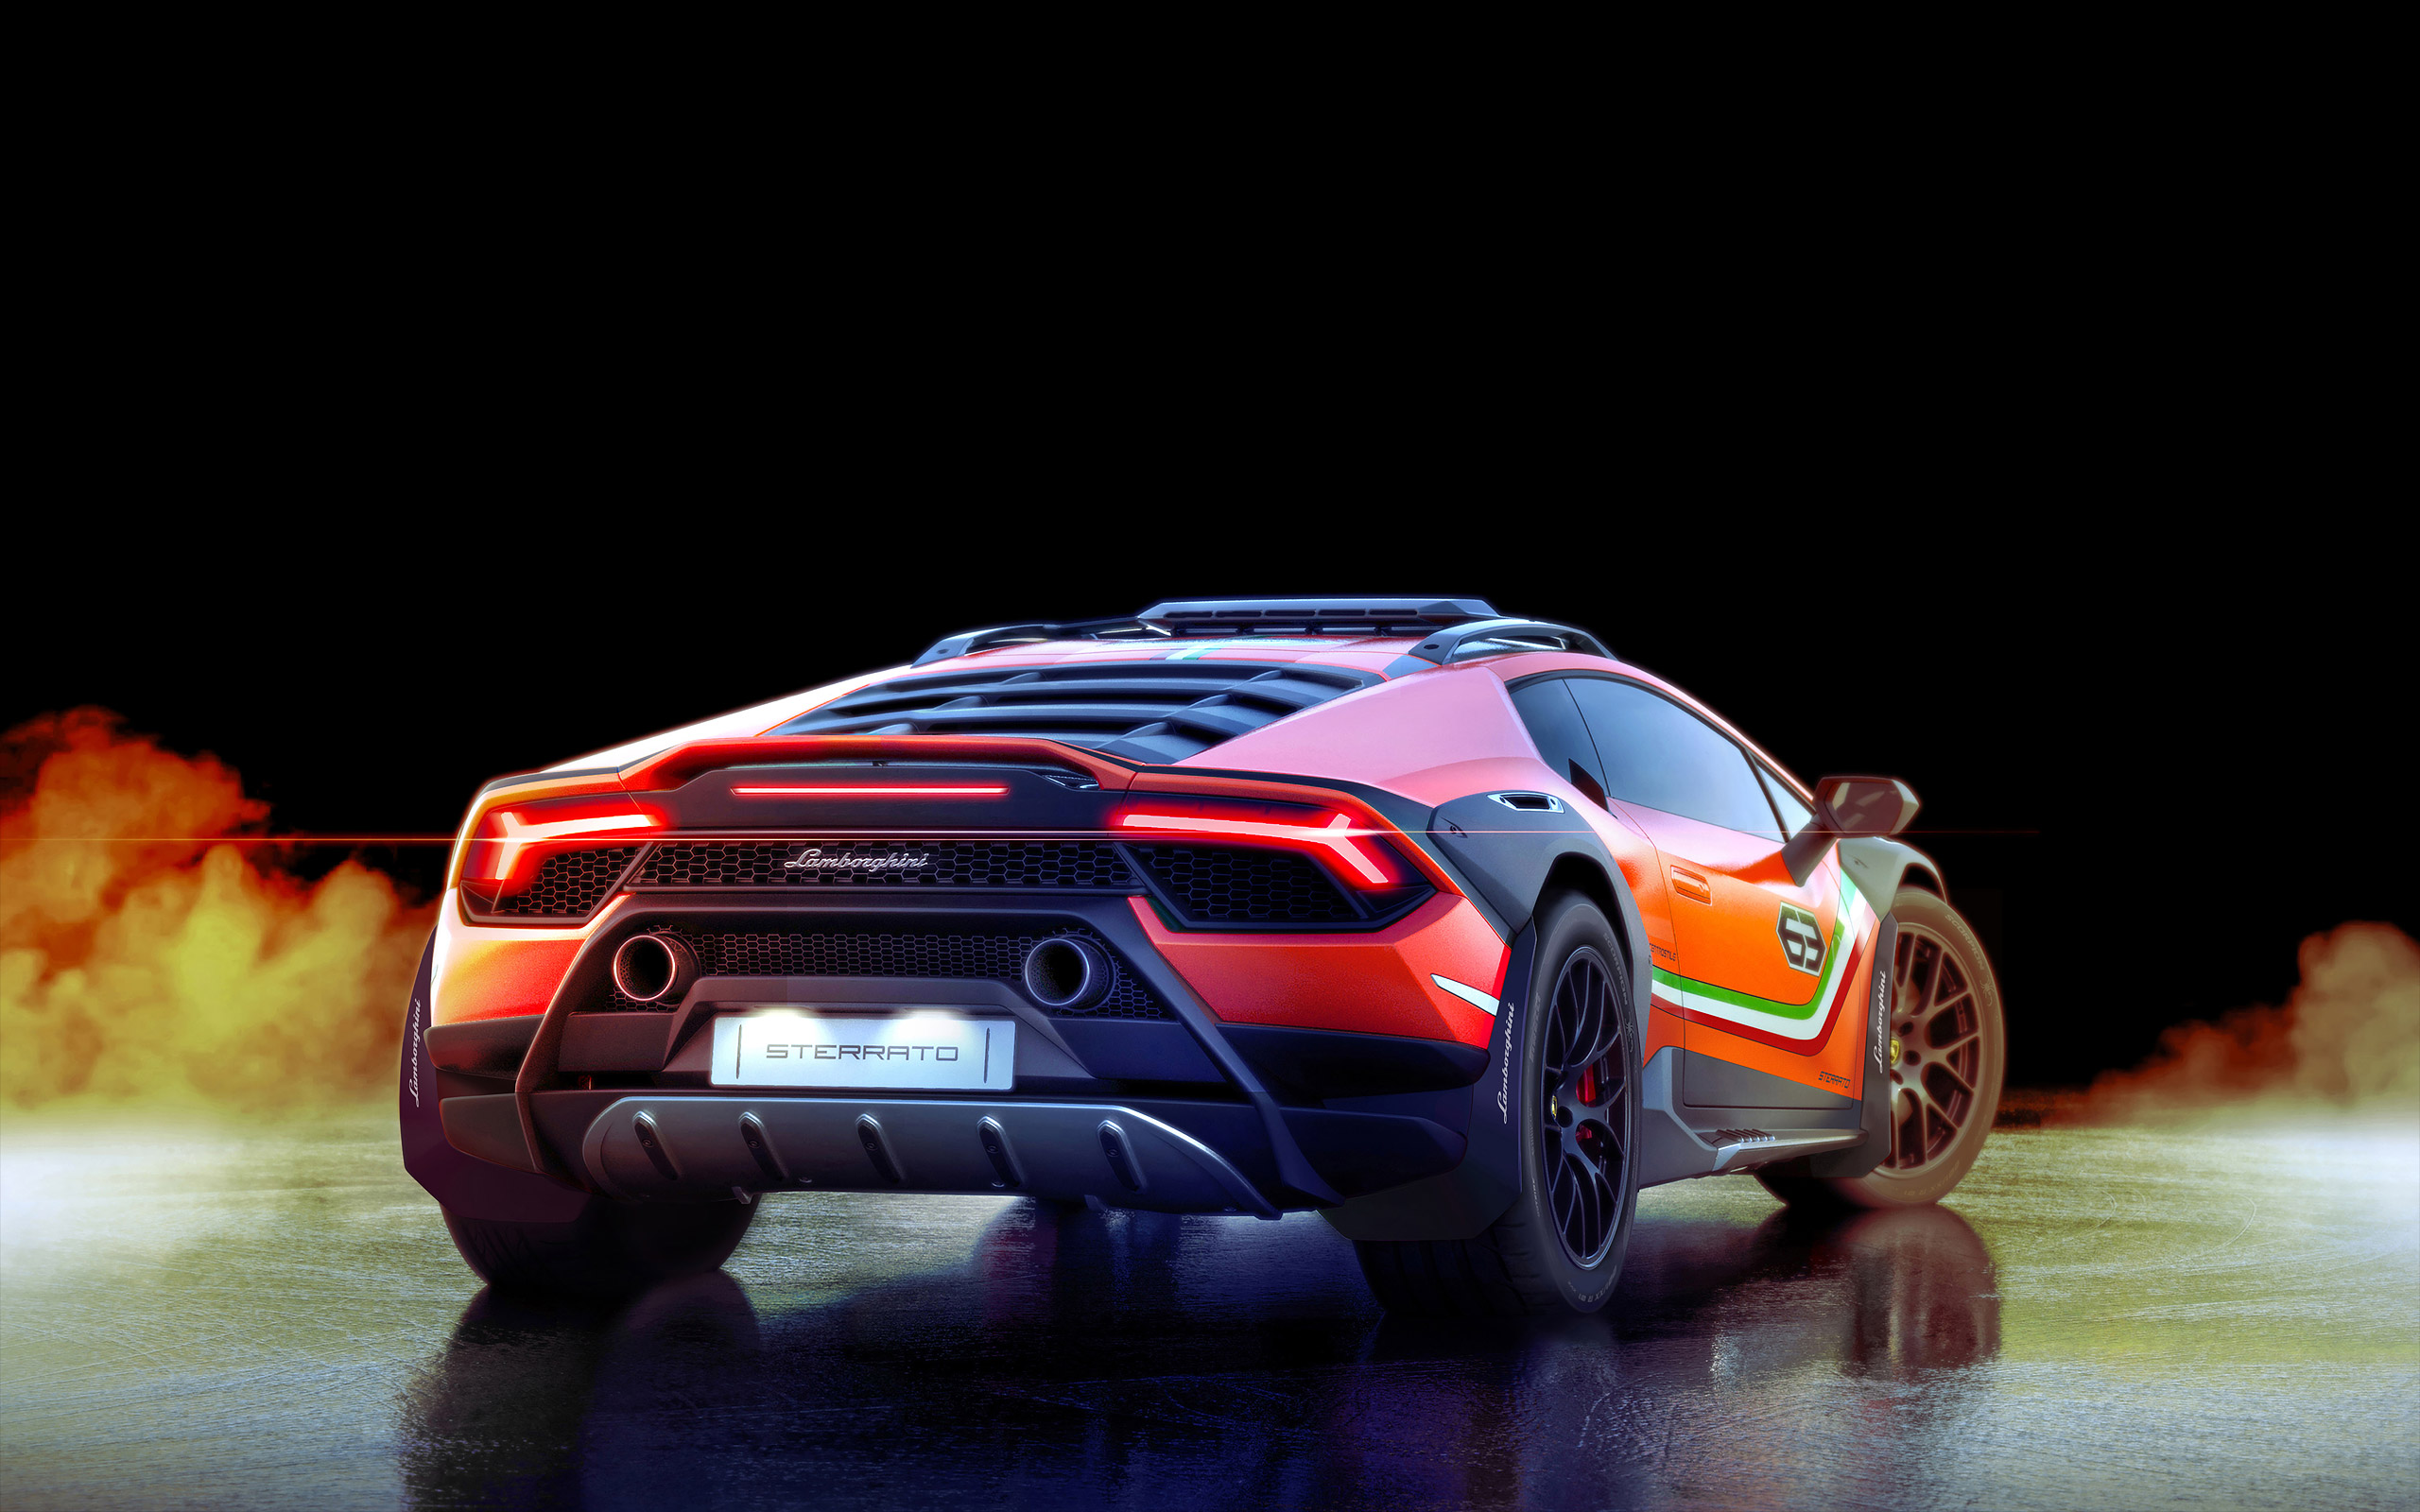  2019 Lamborghini Huracan Sterrato Concept Wallpaper.